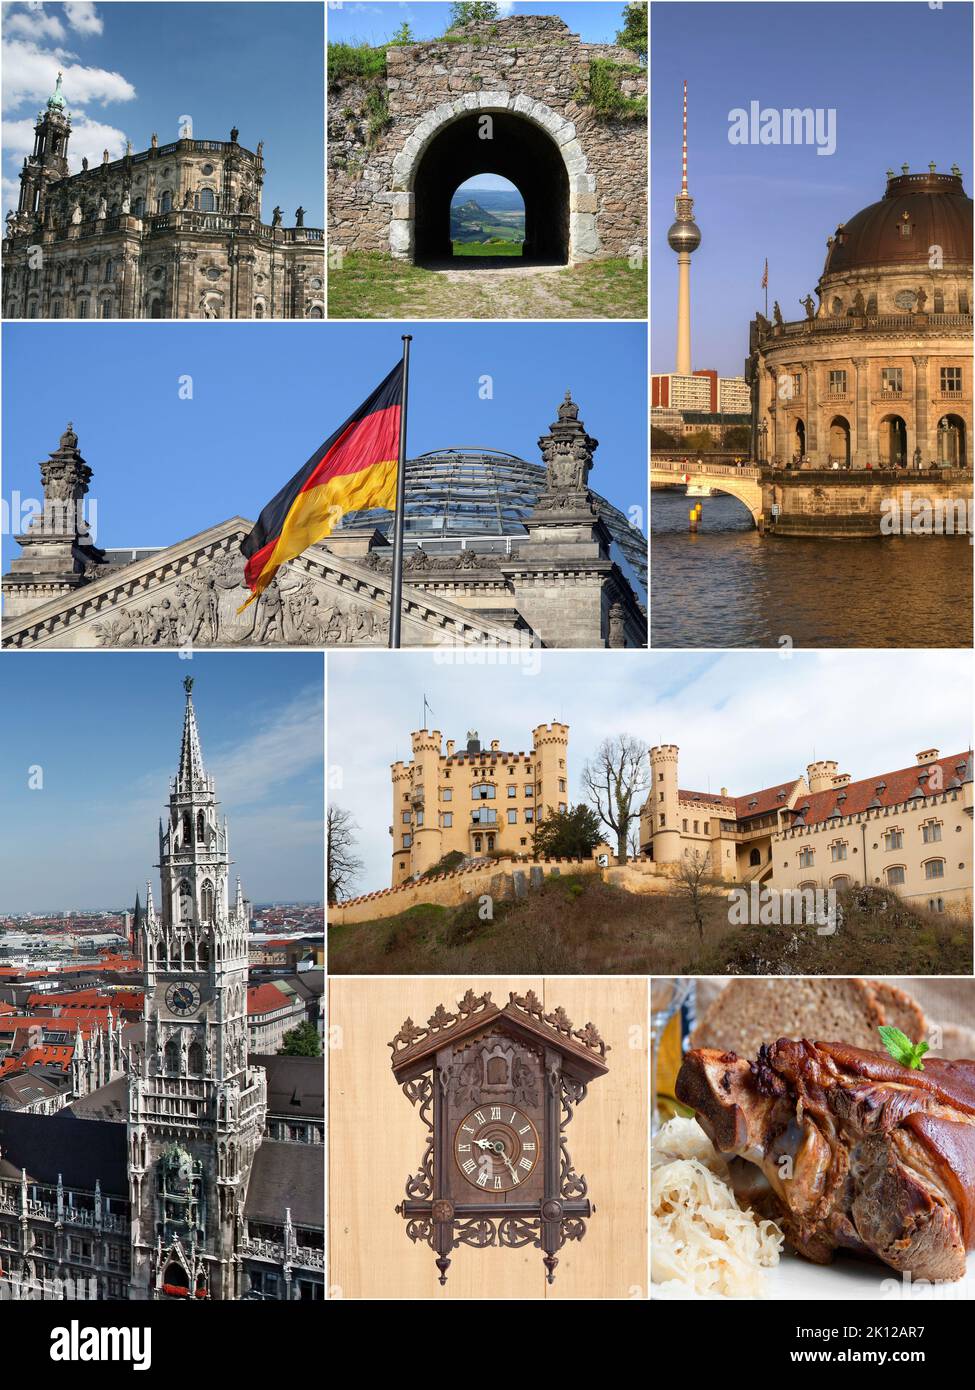 Collage historique de l'Allemagne avec des traditions en architecture, travail d'art et spécialité alimentaire Banque D'Images